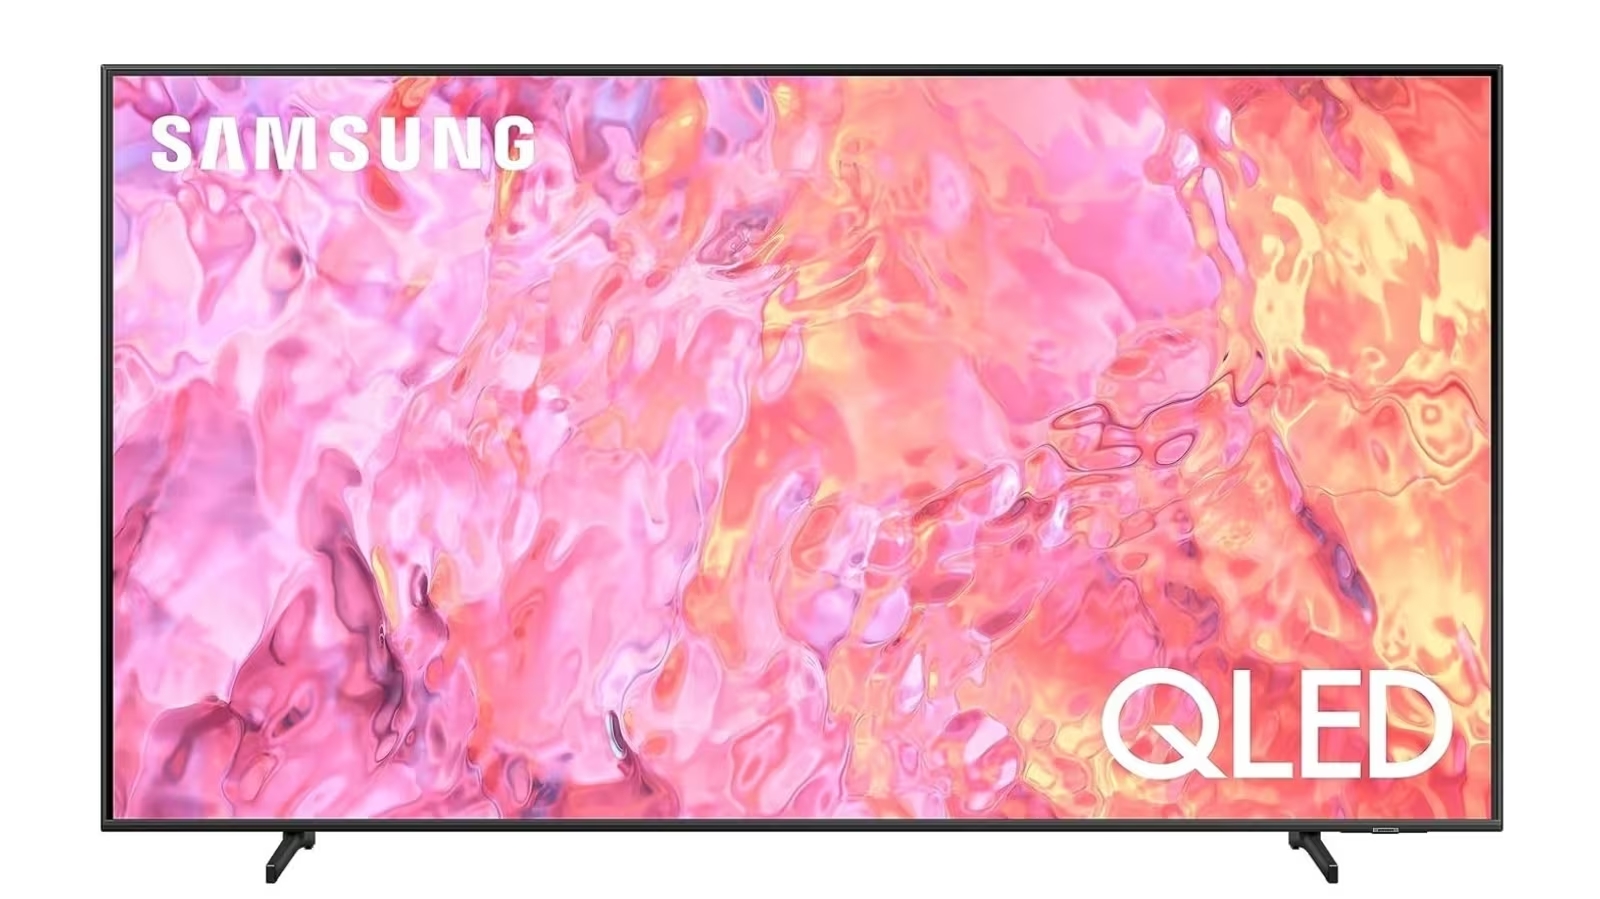 Телевизор Samsung QLED 4K Q60C QE55Q60CAUXRU